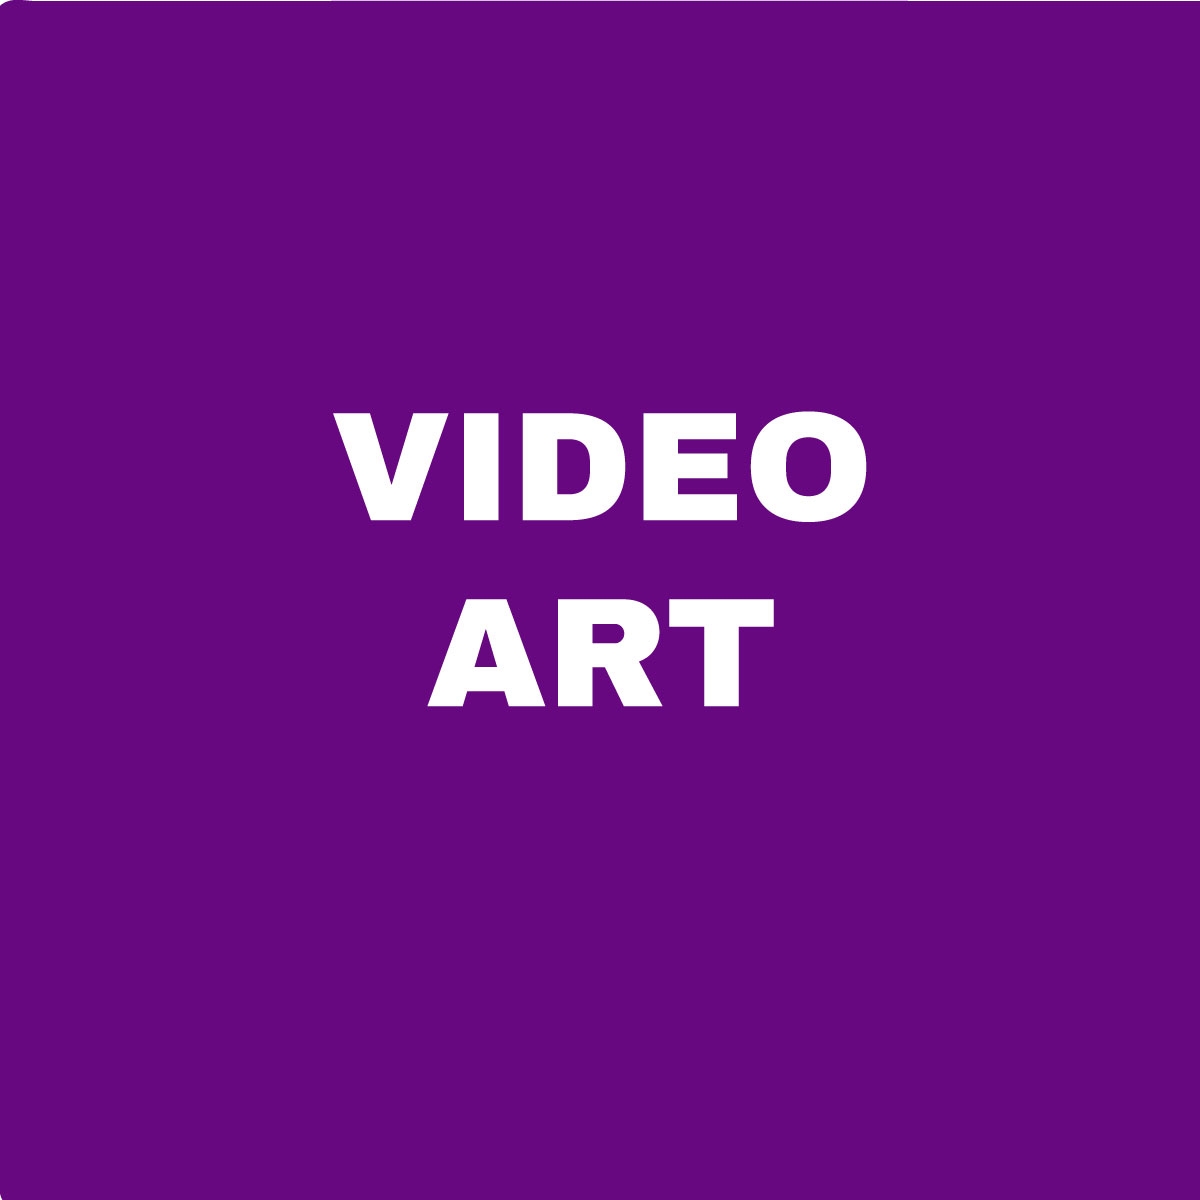 Video art